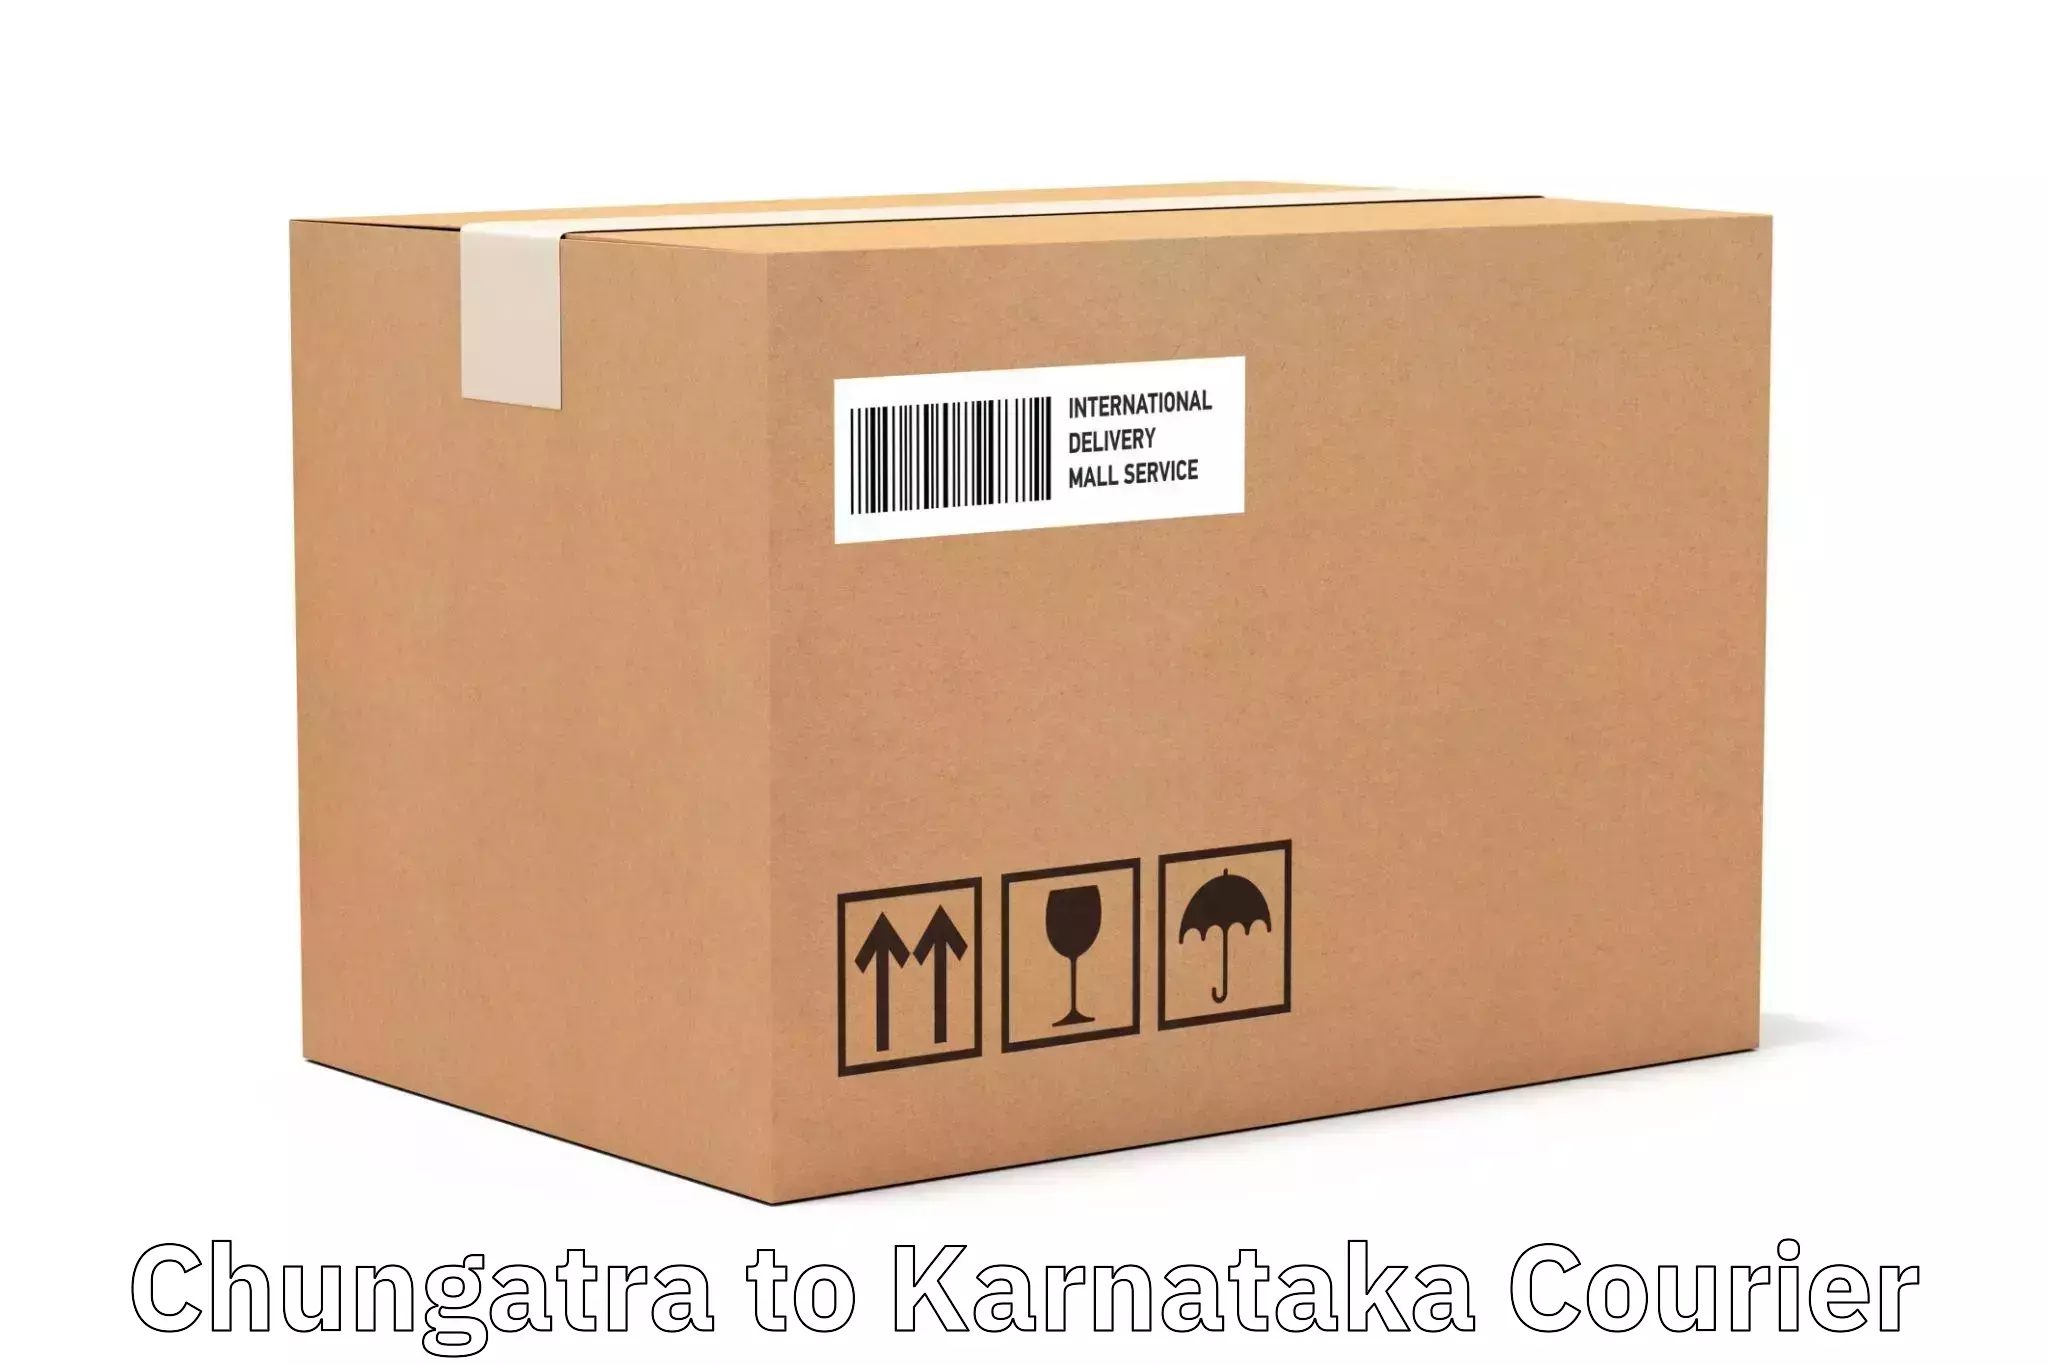 Quality courier partnerships Chungatra to Mangalore University Mangalagangotri